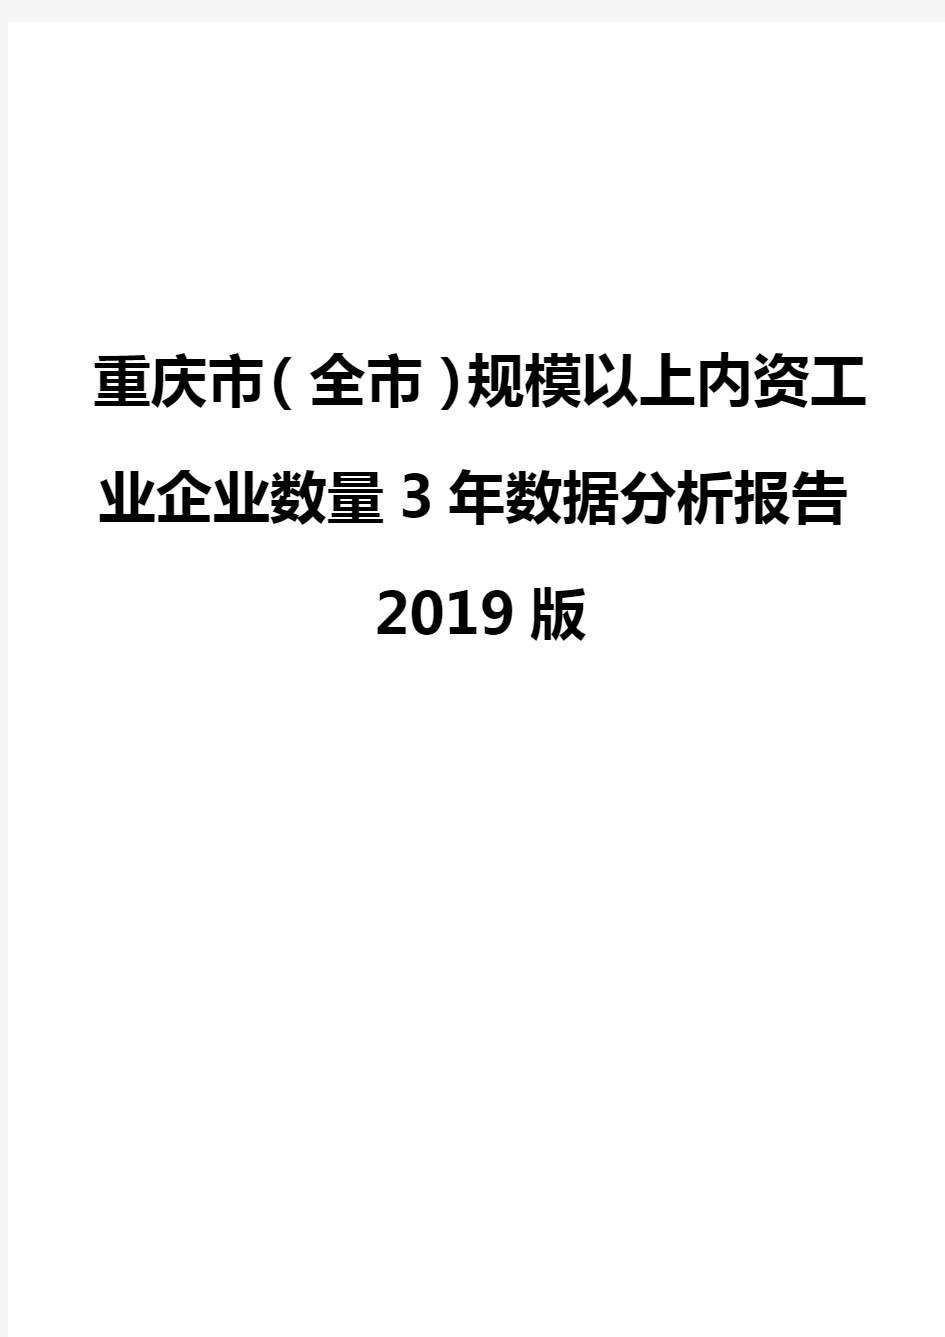 重庆市(全市)规模以上内资工业企业数量3年数据分析报告2019版